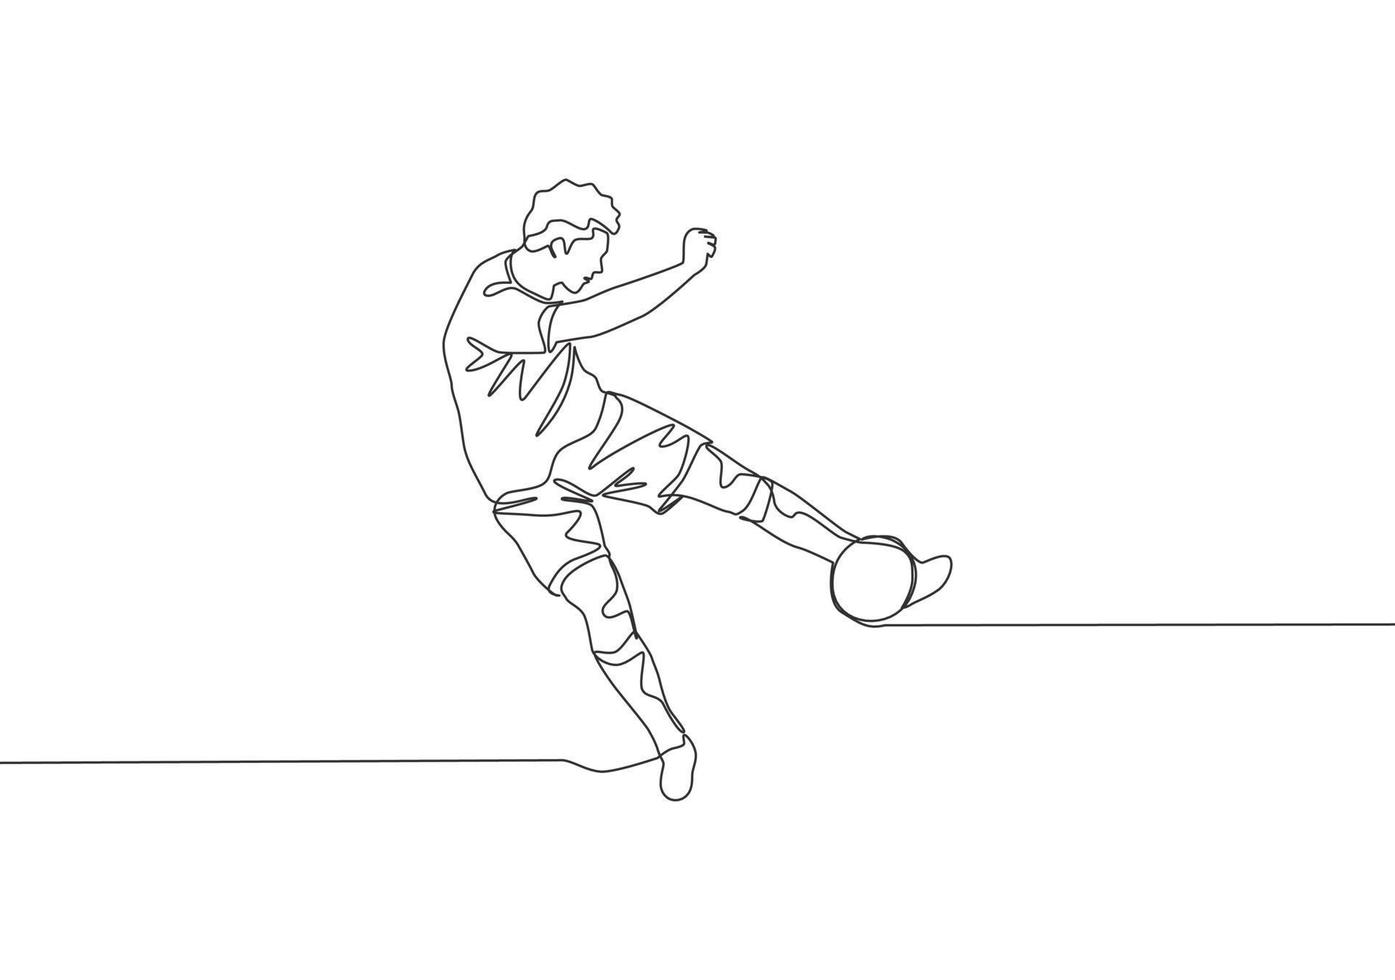 uno continuo linea disegno di giovane talentuoso calcio giocatore tiro il palla con primo tempo calcio tecnica. calcio incontro gli sport concetto. singolo linea disegnare design vettore illustrazione